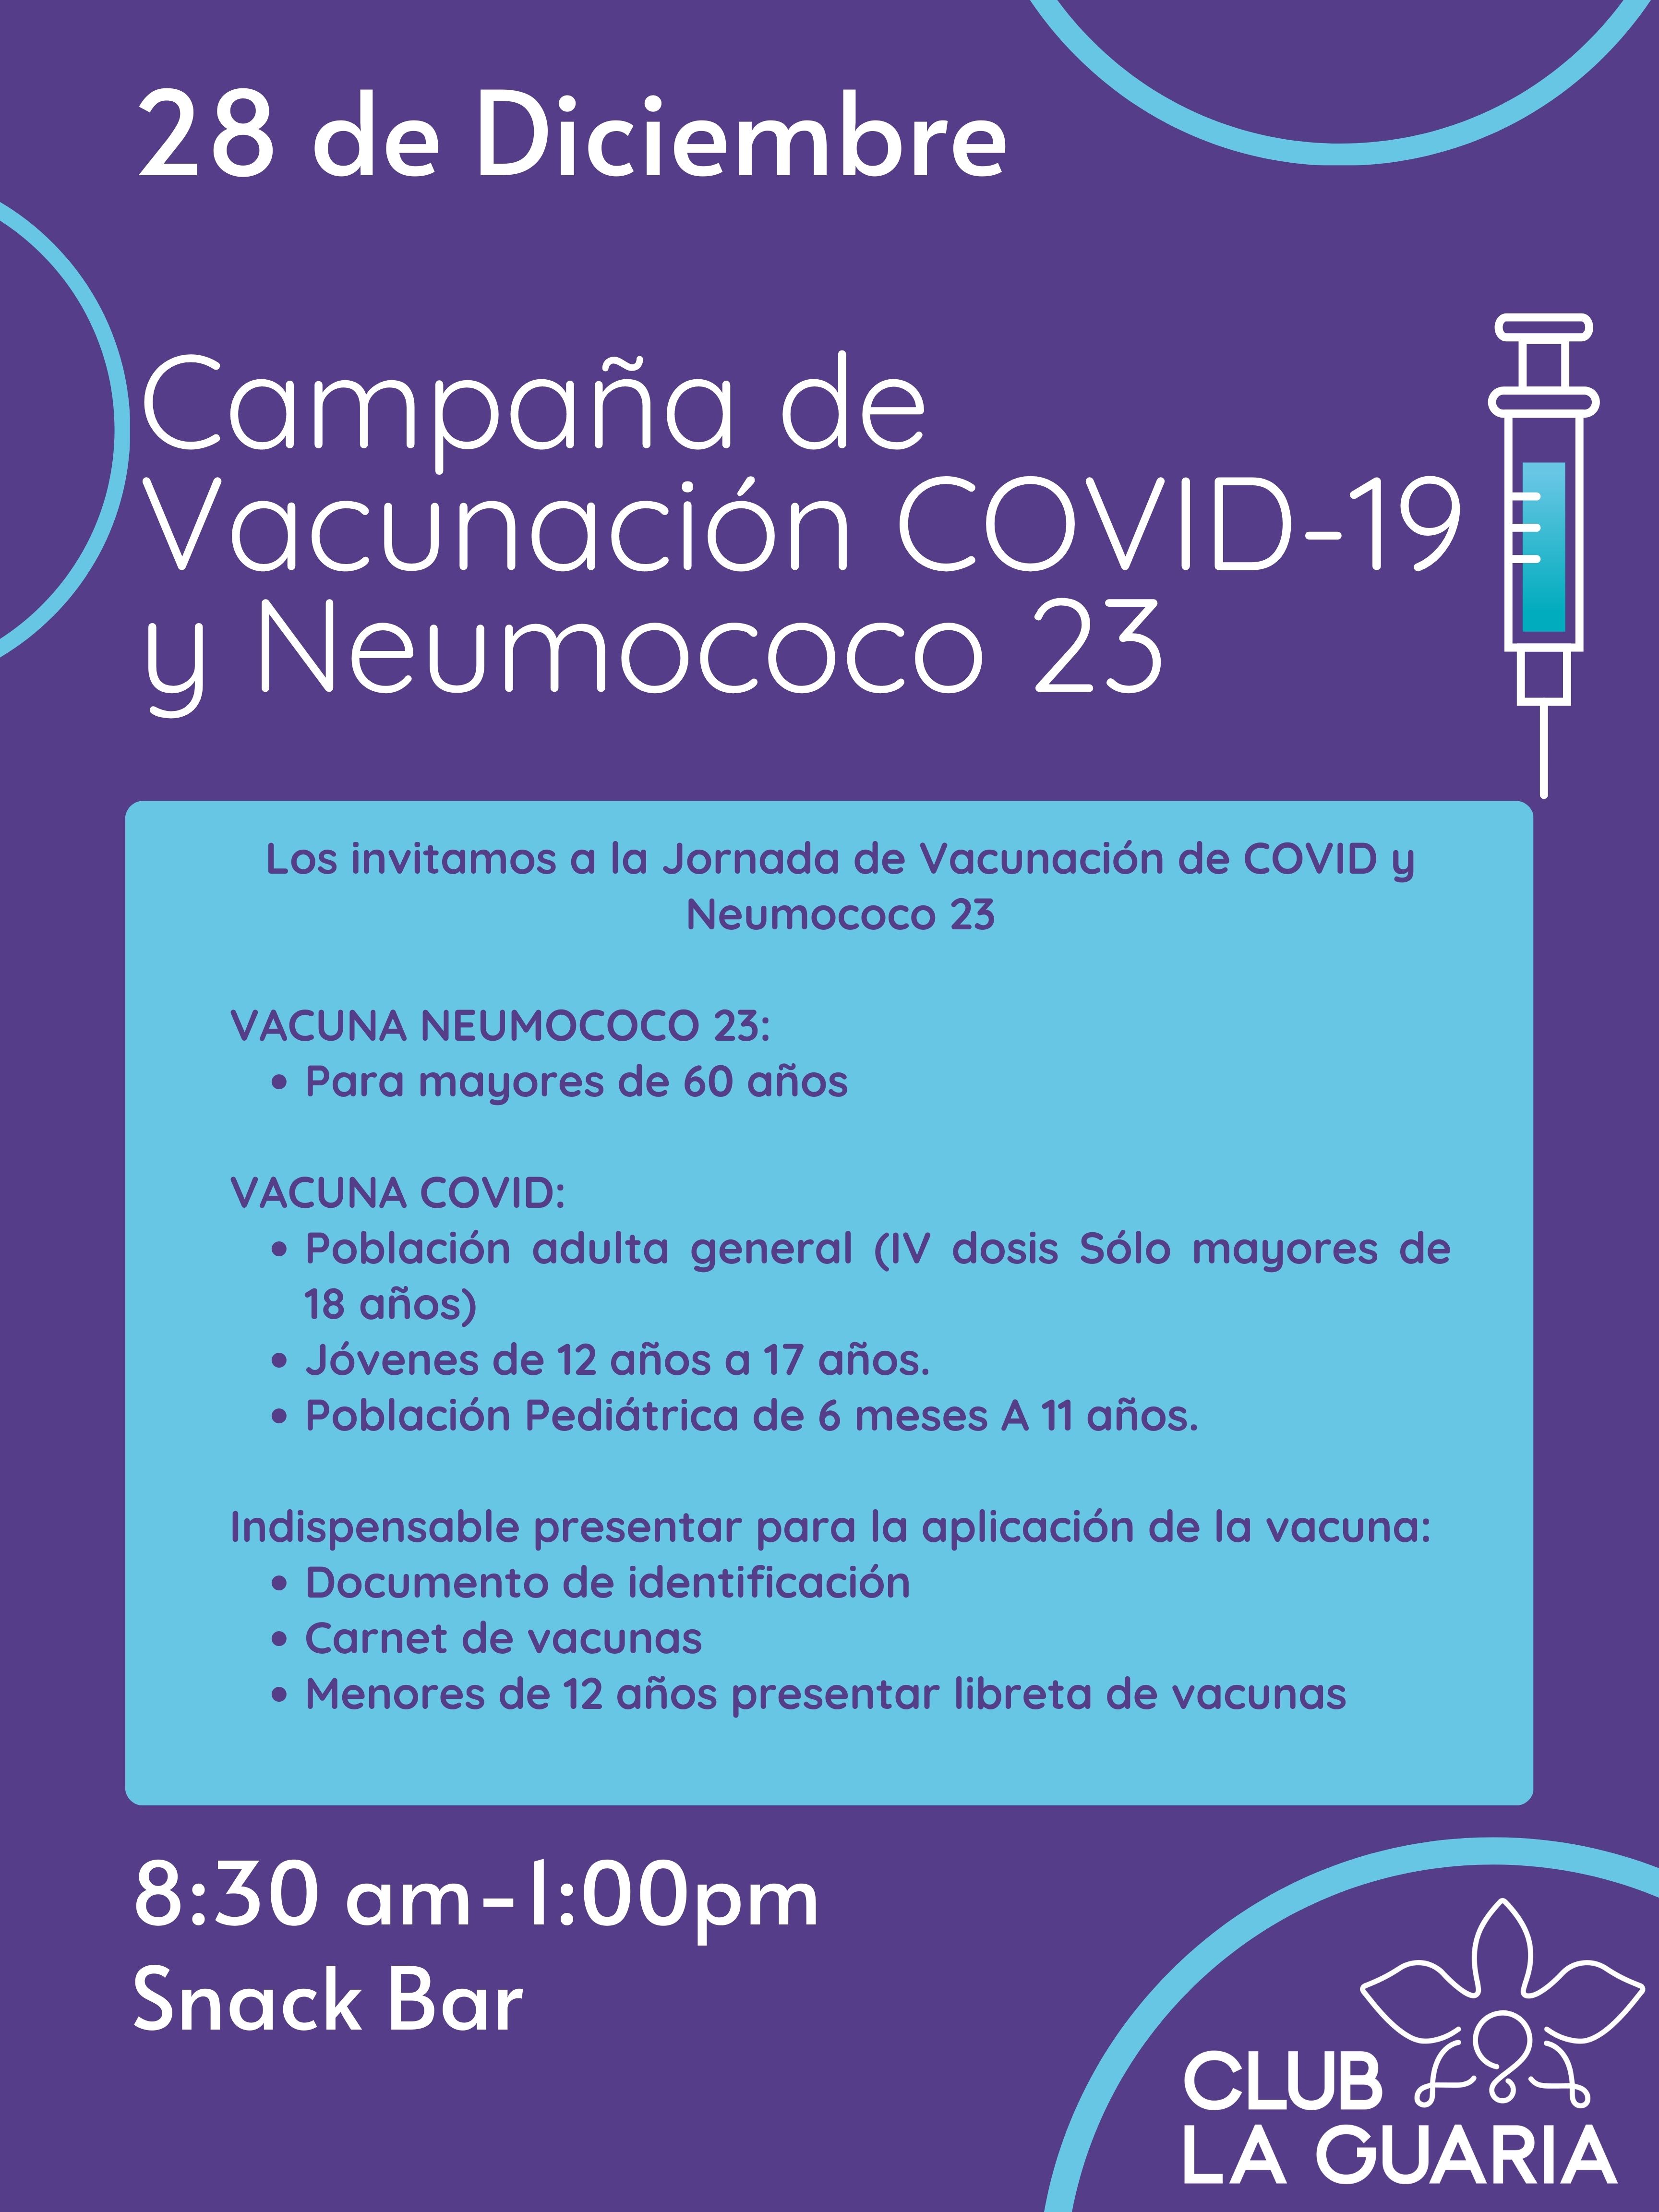 Campaña de Vacunación COVID-19 y Neumococo 23